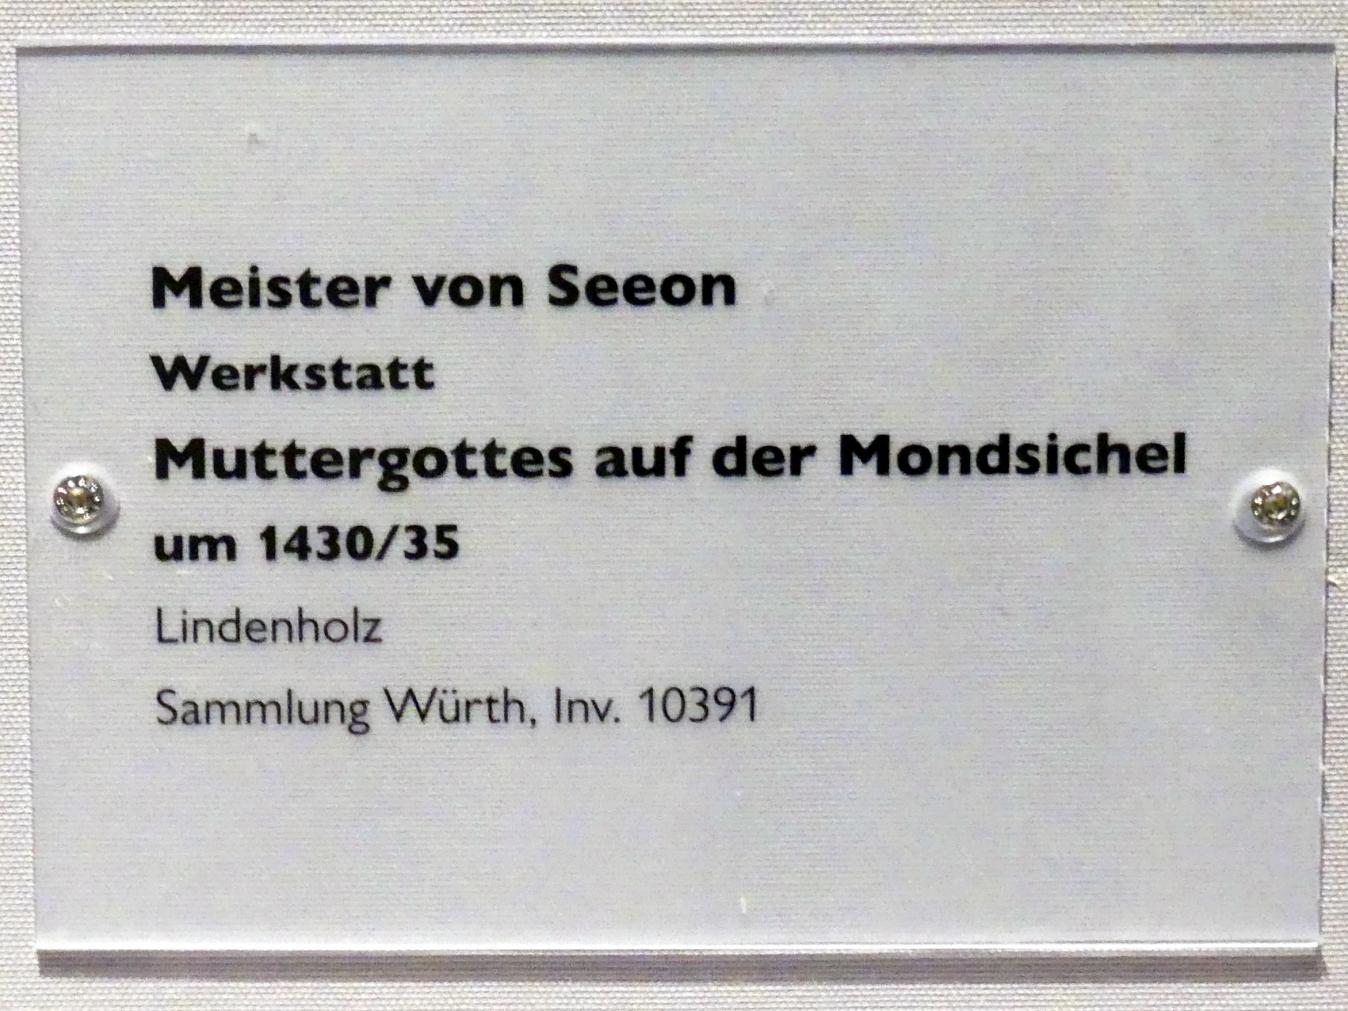 Meister von Seeon (Werkstatt) (1432), Muttergottes auf der Mondsichel, Schwäbisch Hall, Johanniterkirche, Alte Meister in der Sammlung Würth, um 1430–1435, Bild 3/3